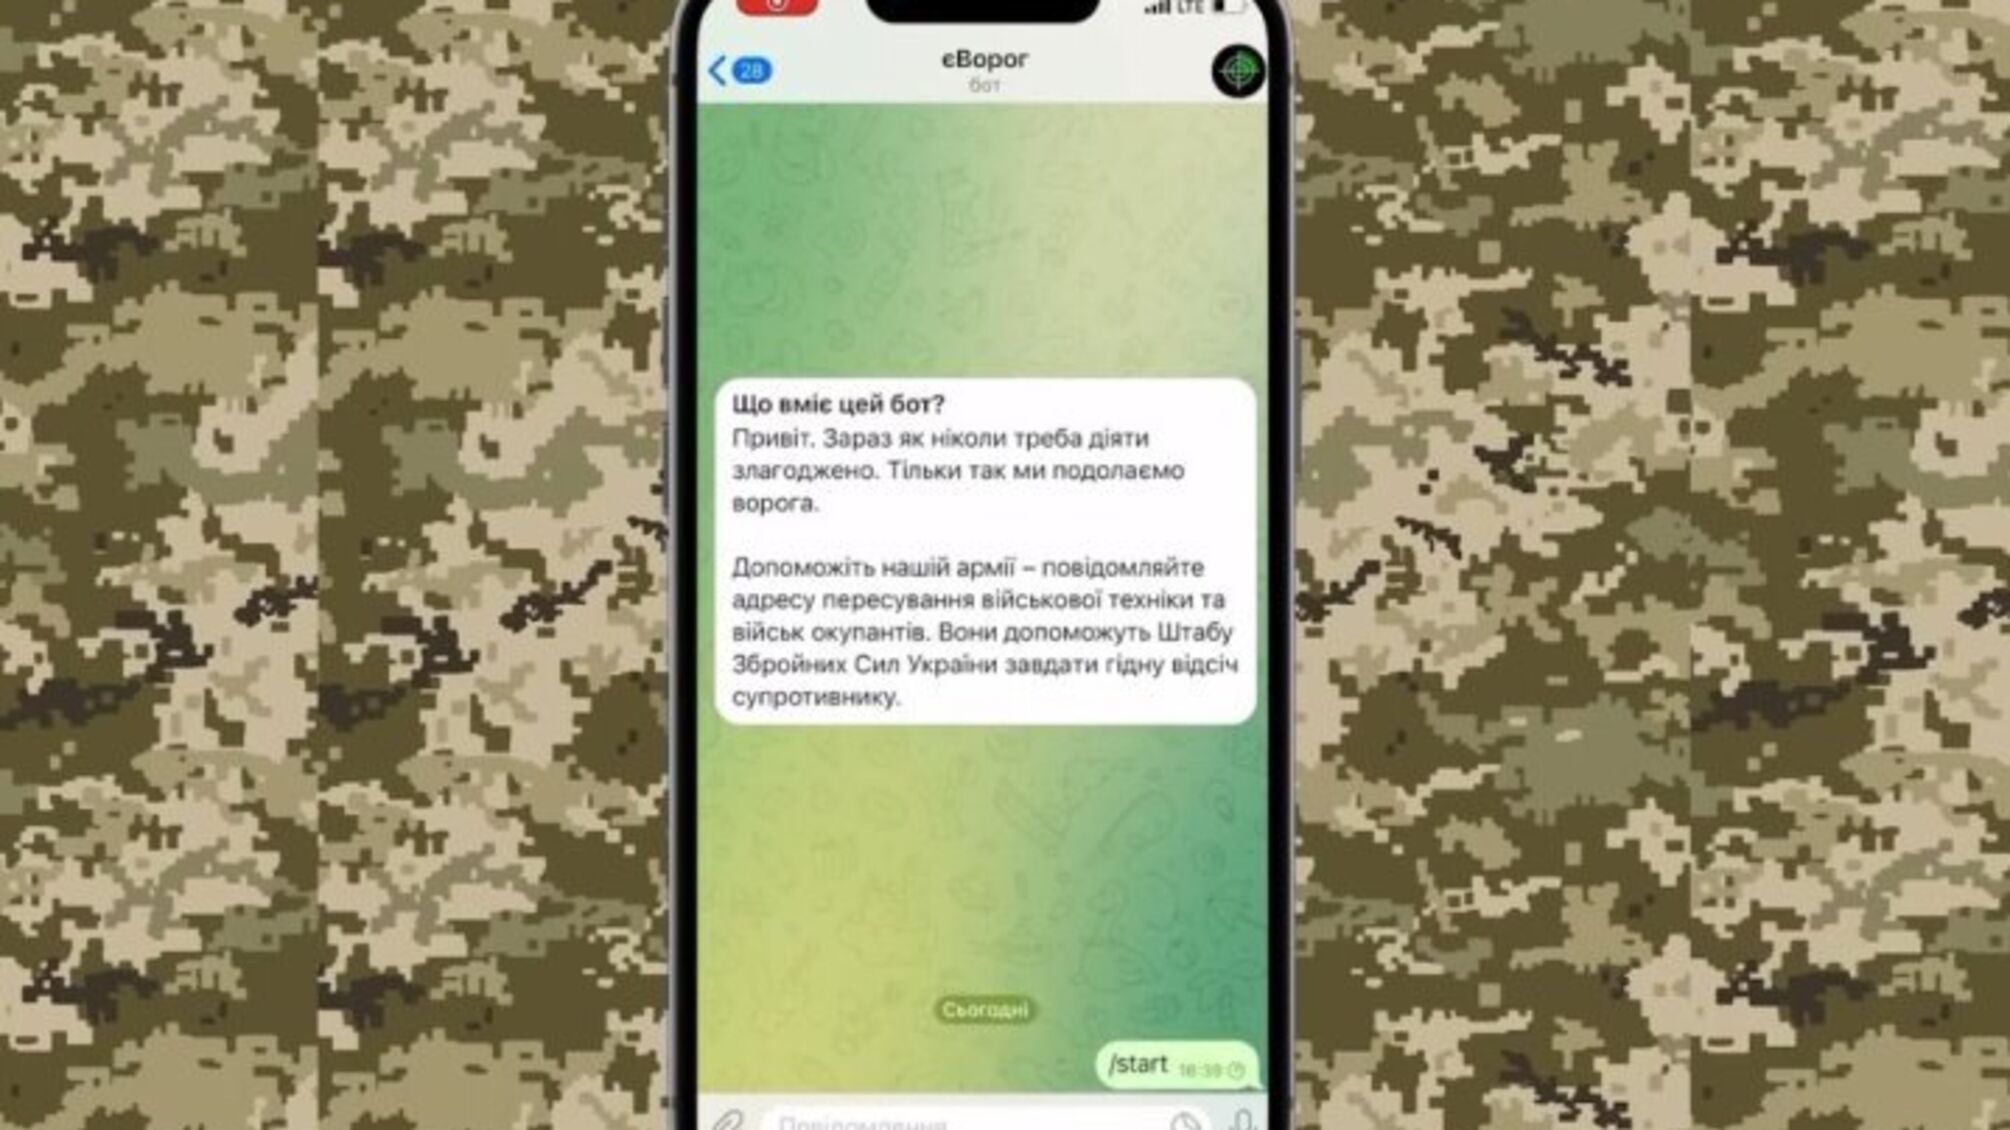 Telegram заблокував чатбот 'єВорог', який використовувався для повідомлення про рух окупантів, – ГУР